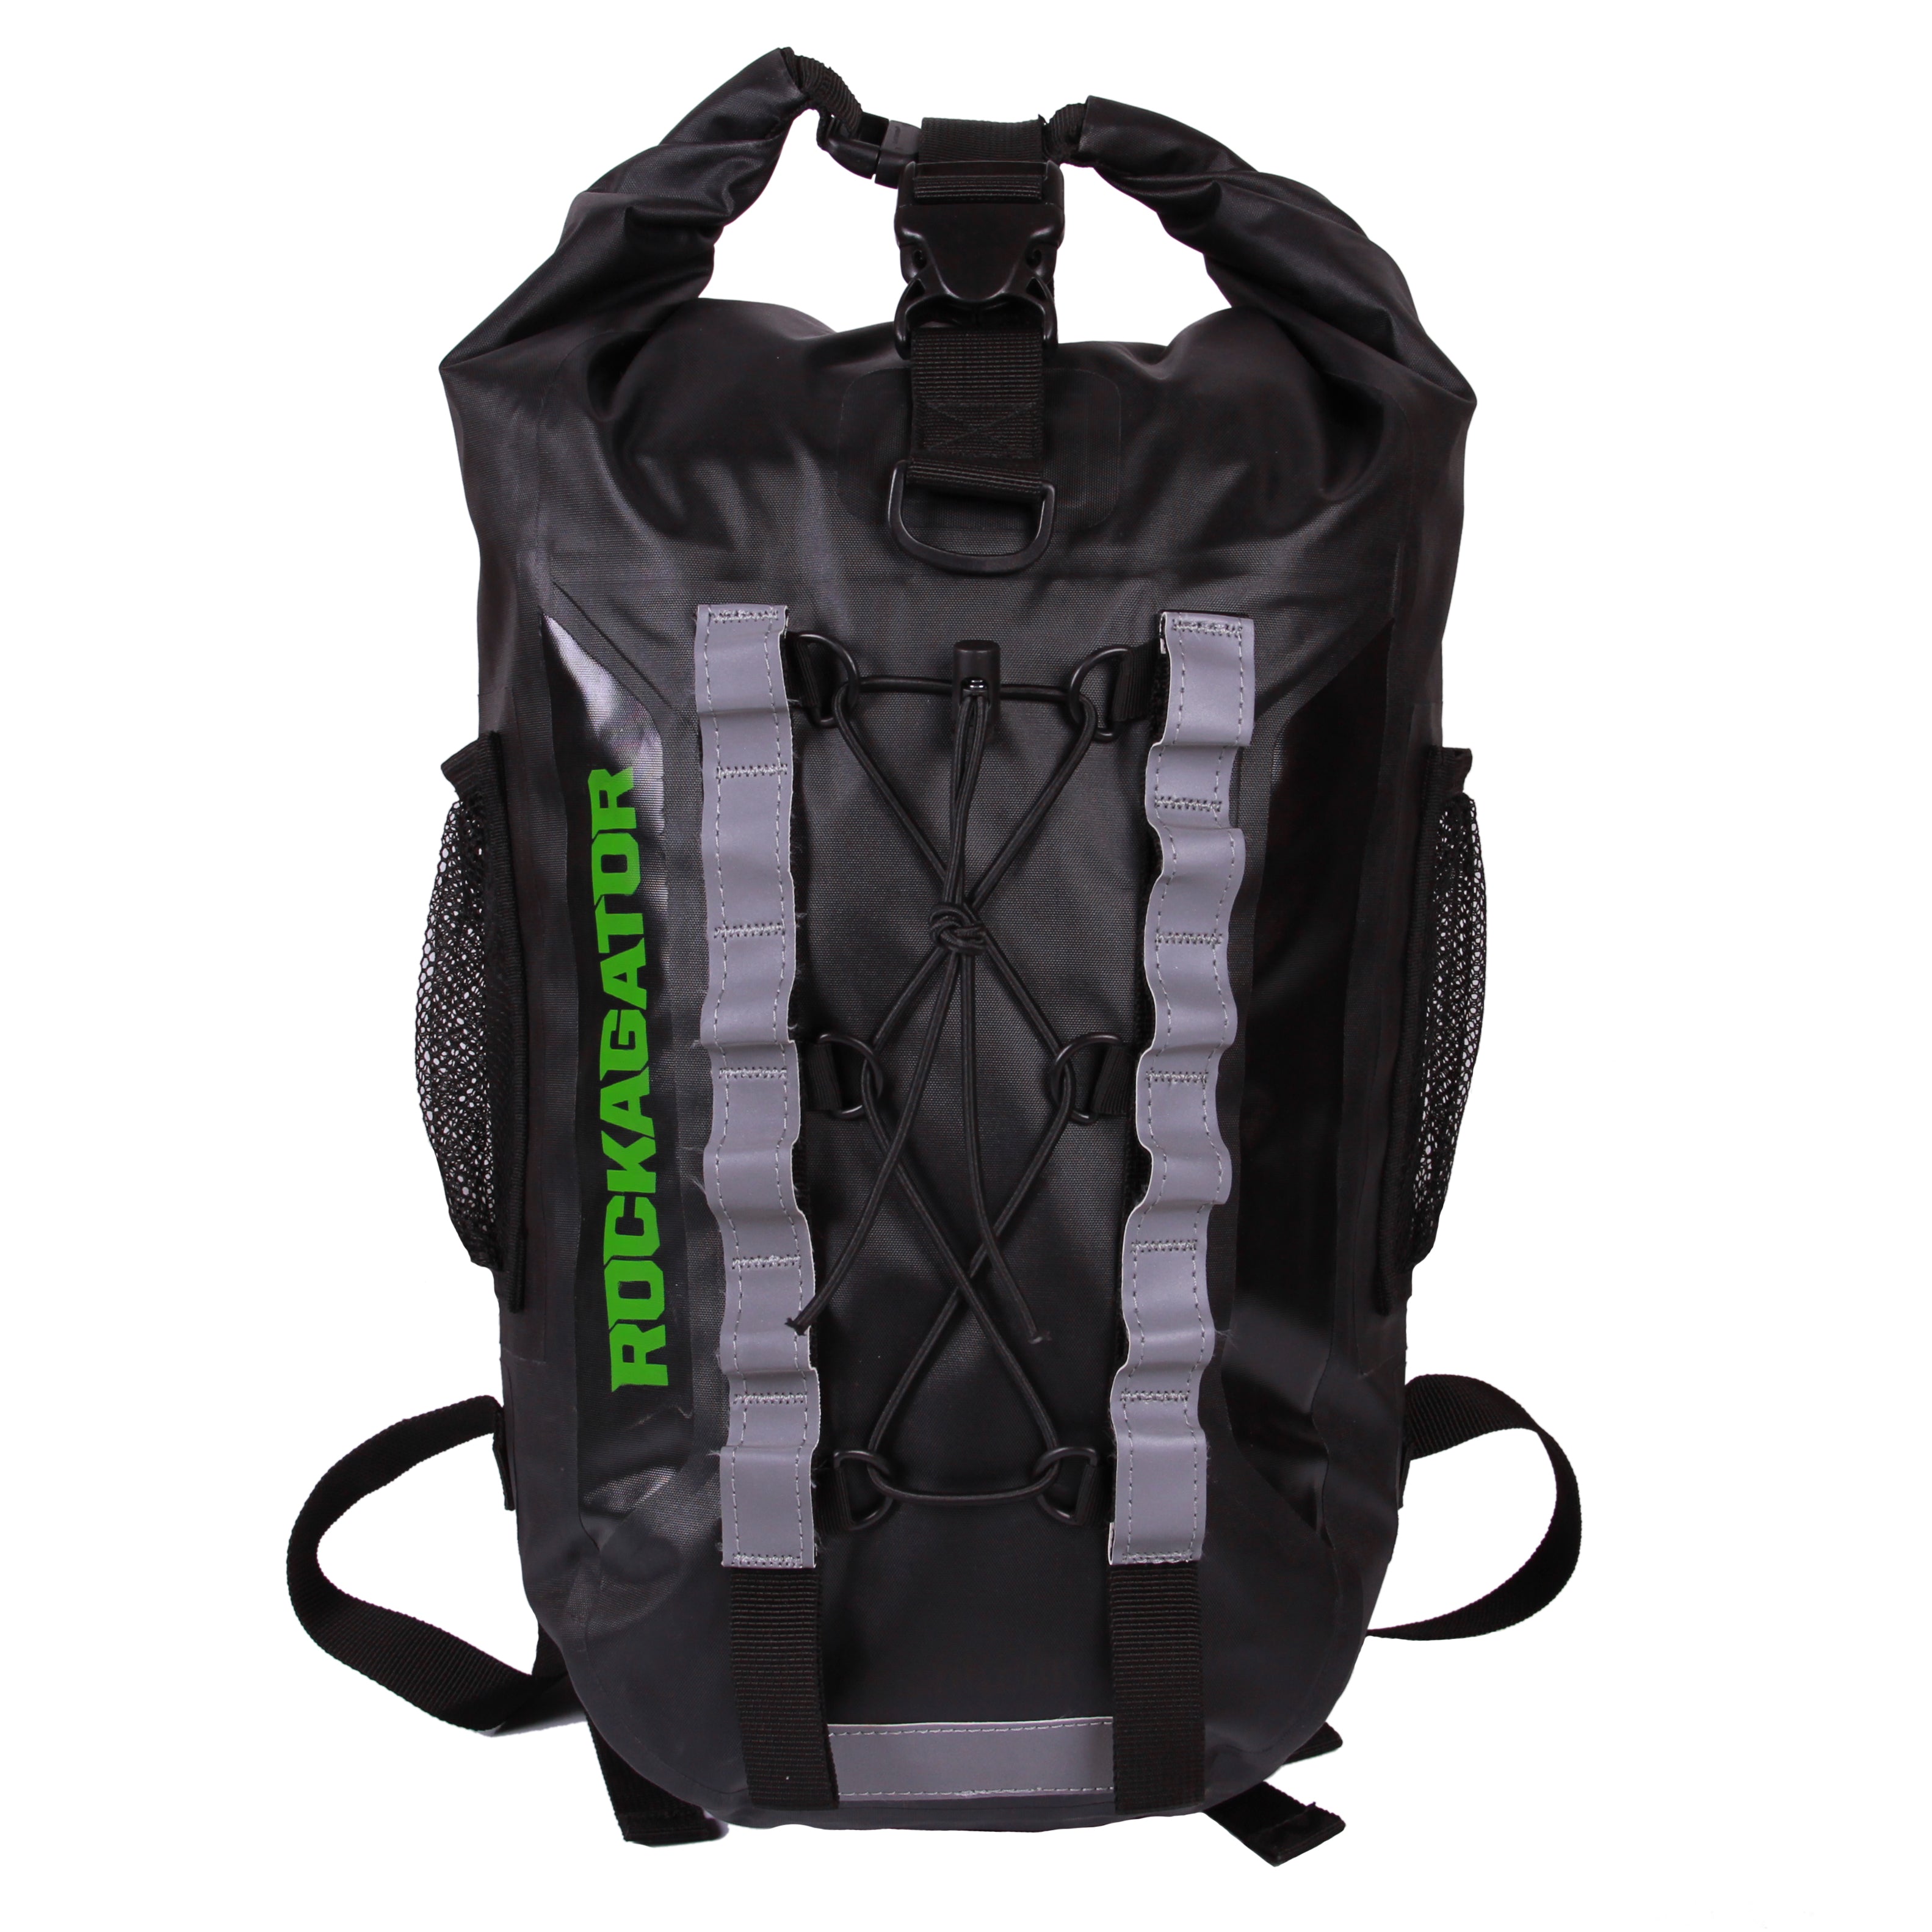 Bundle Special Firebreak Ultralight 25-Liter Waterproof Backpack and 2 Bonus Dry Bags